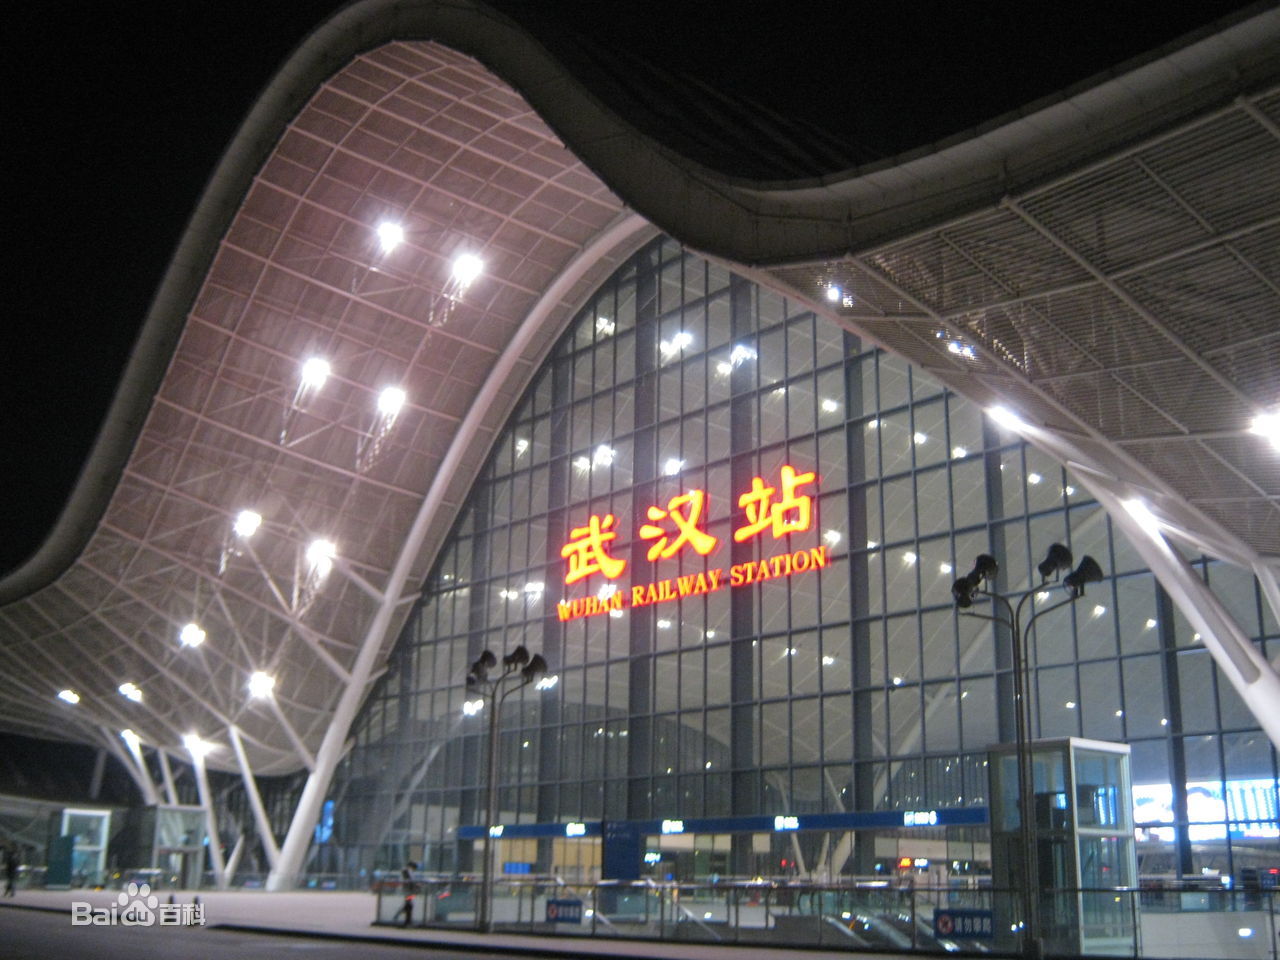 广州南站与武汉站都十分漂亮,但感觉都十分相似,如果加点地方特色或者